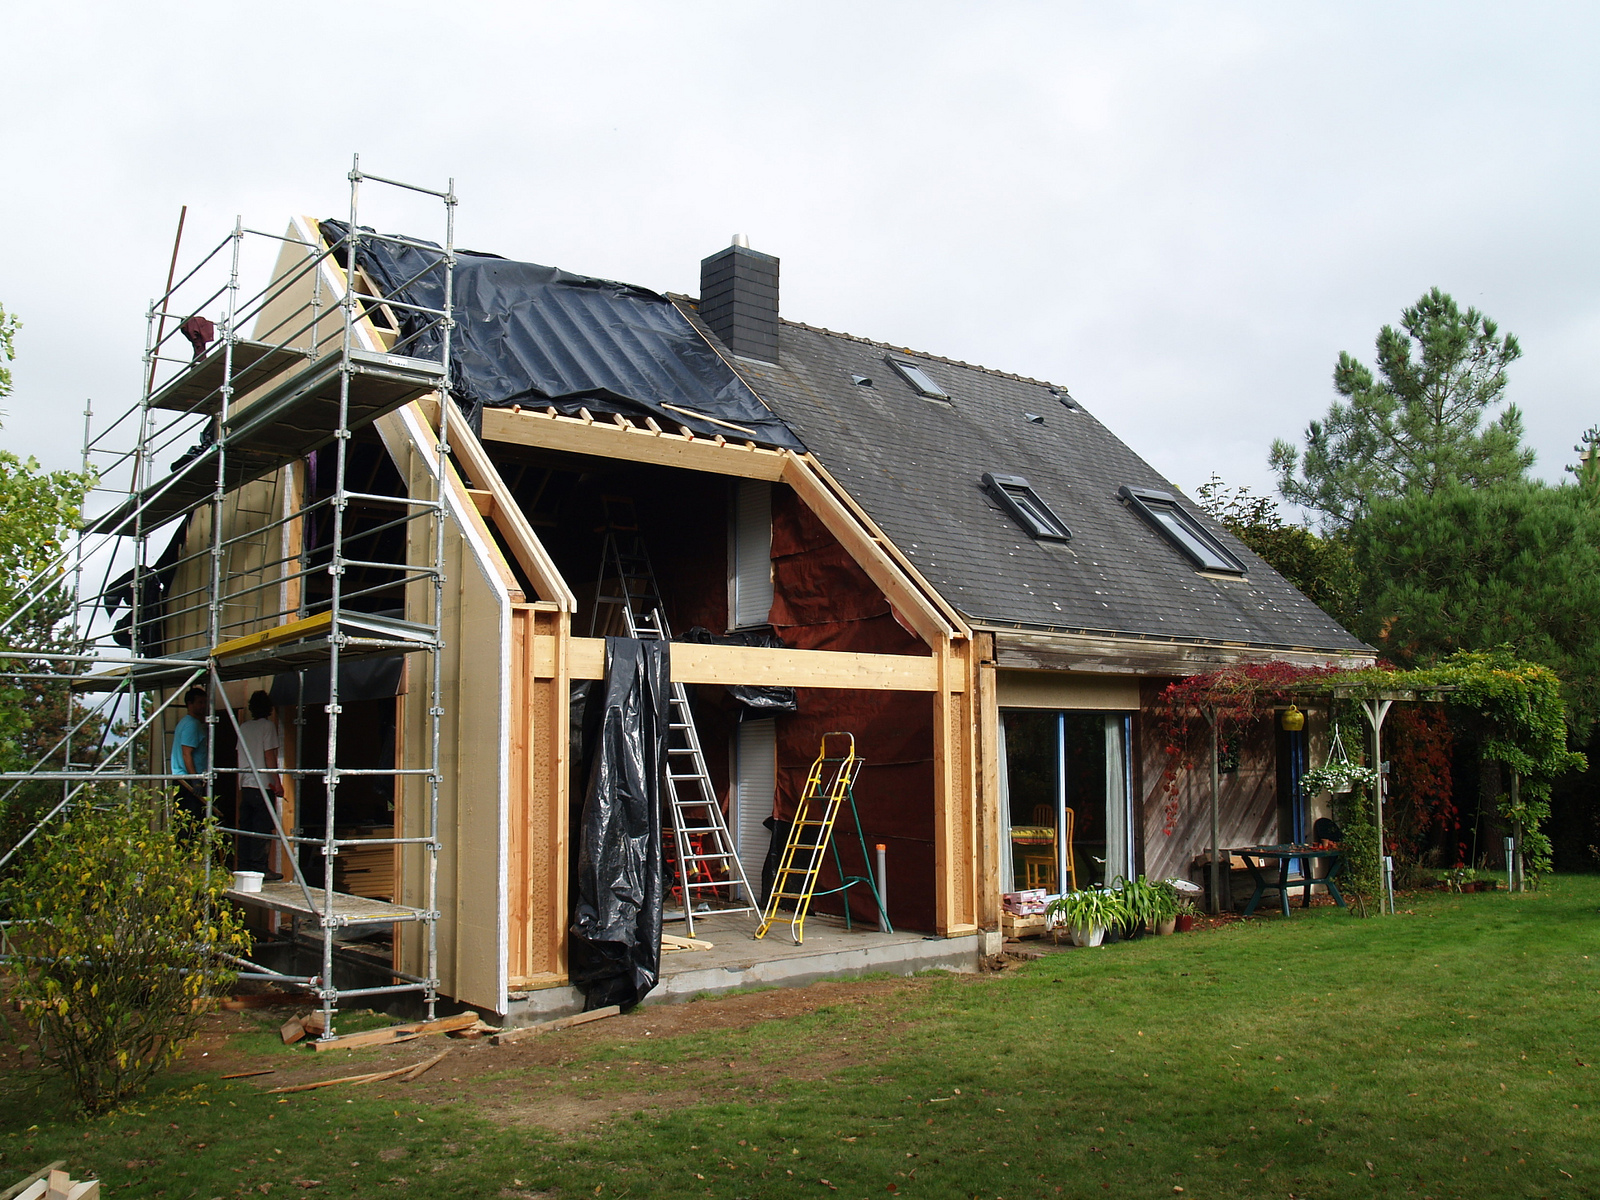 Des travaux de rénovation thermique peuvent aider à lutter contre la précarité énergétique. © Michèle Turbin, Flickr, CC by-sa 2.0